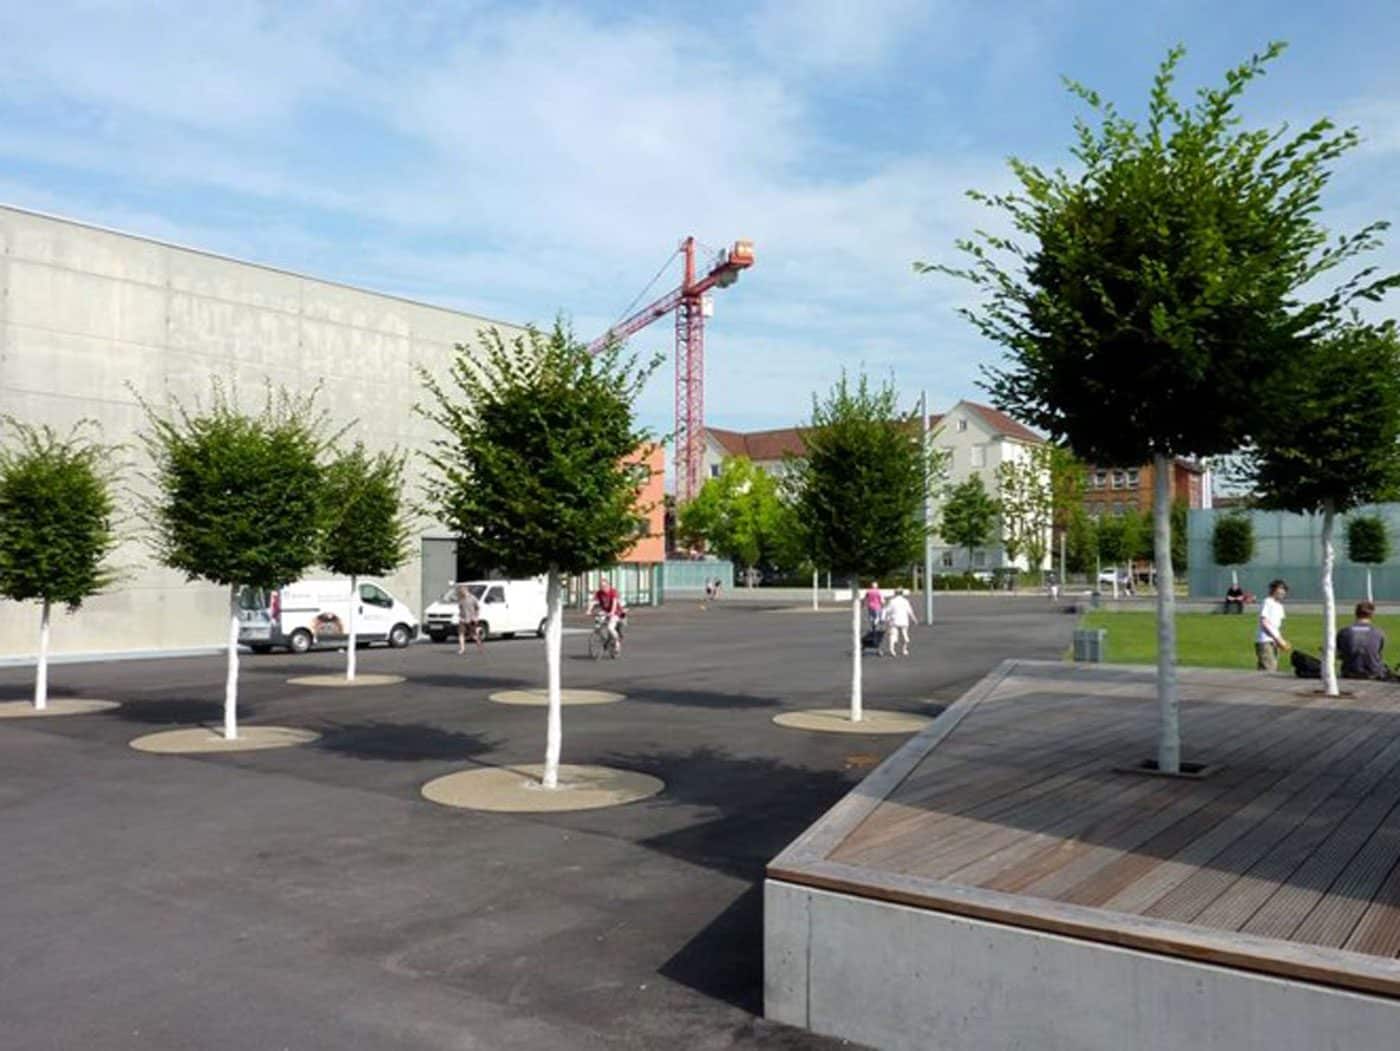 Aus dem Parkplatz ist nach der Umgestaltung einen betonierter Platz mit Sitzmöglichkeiten, einer Grünfläche und Baumpflanzungen geworden.